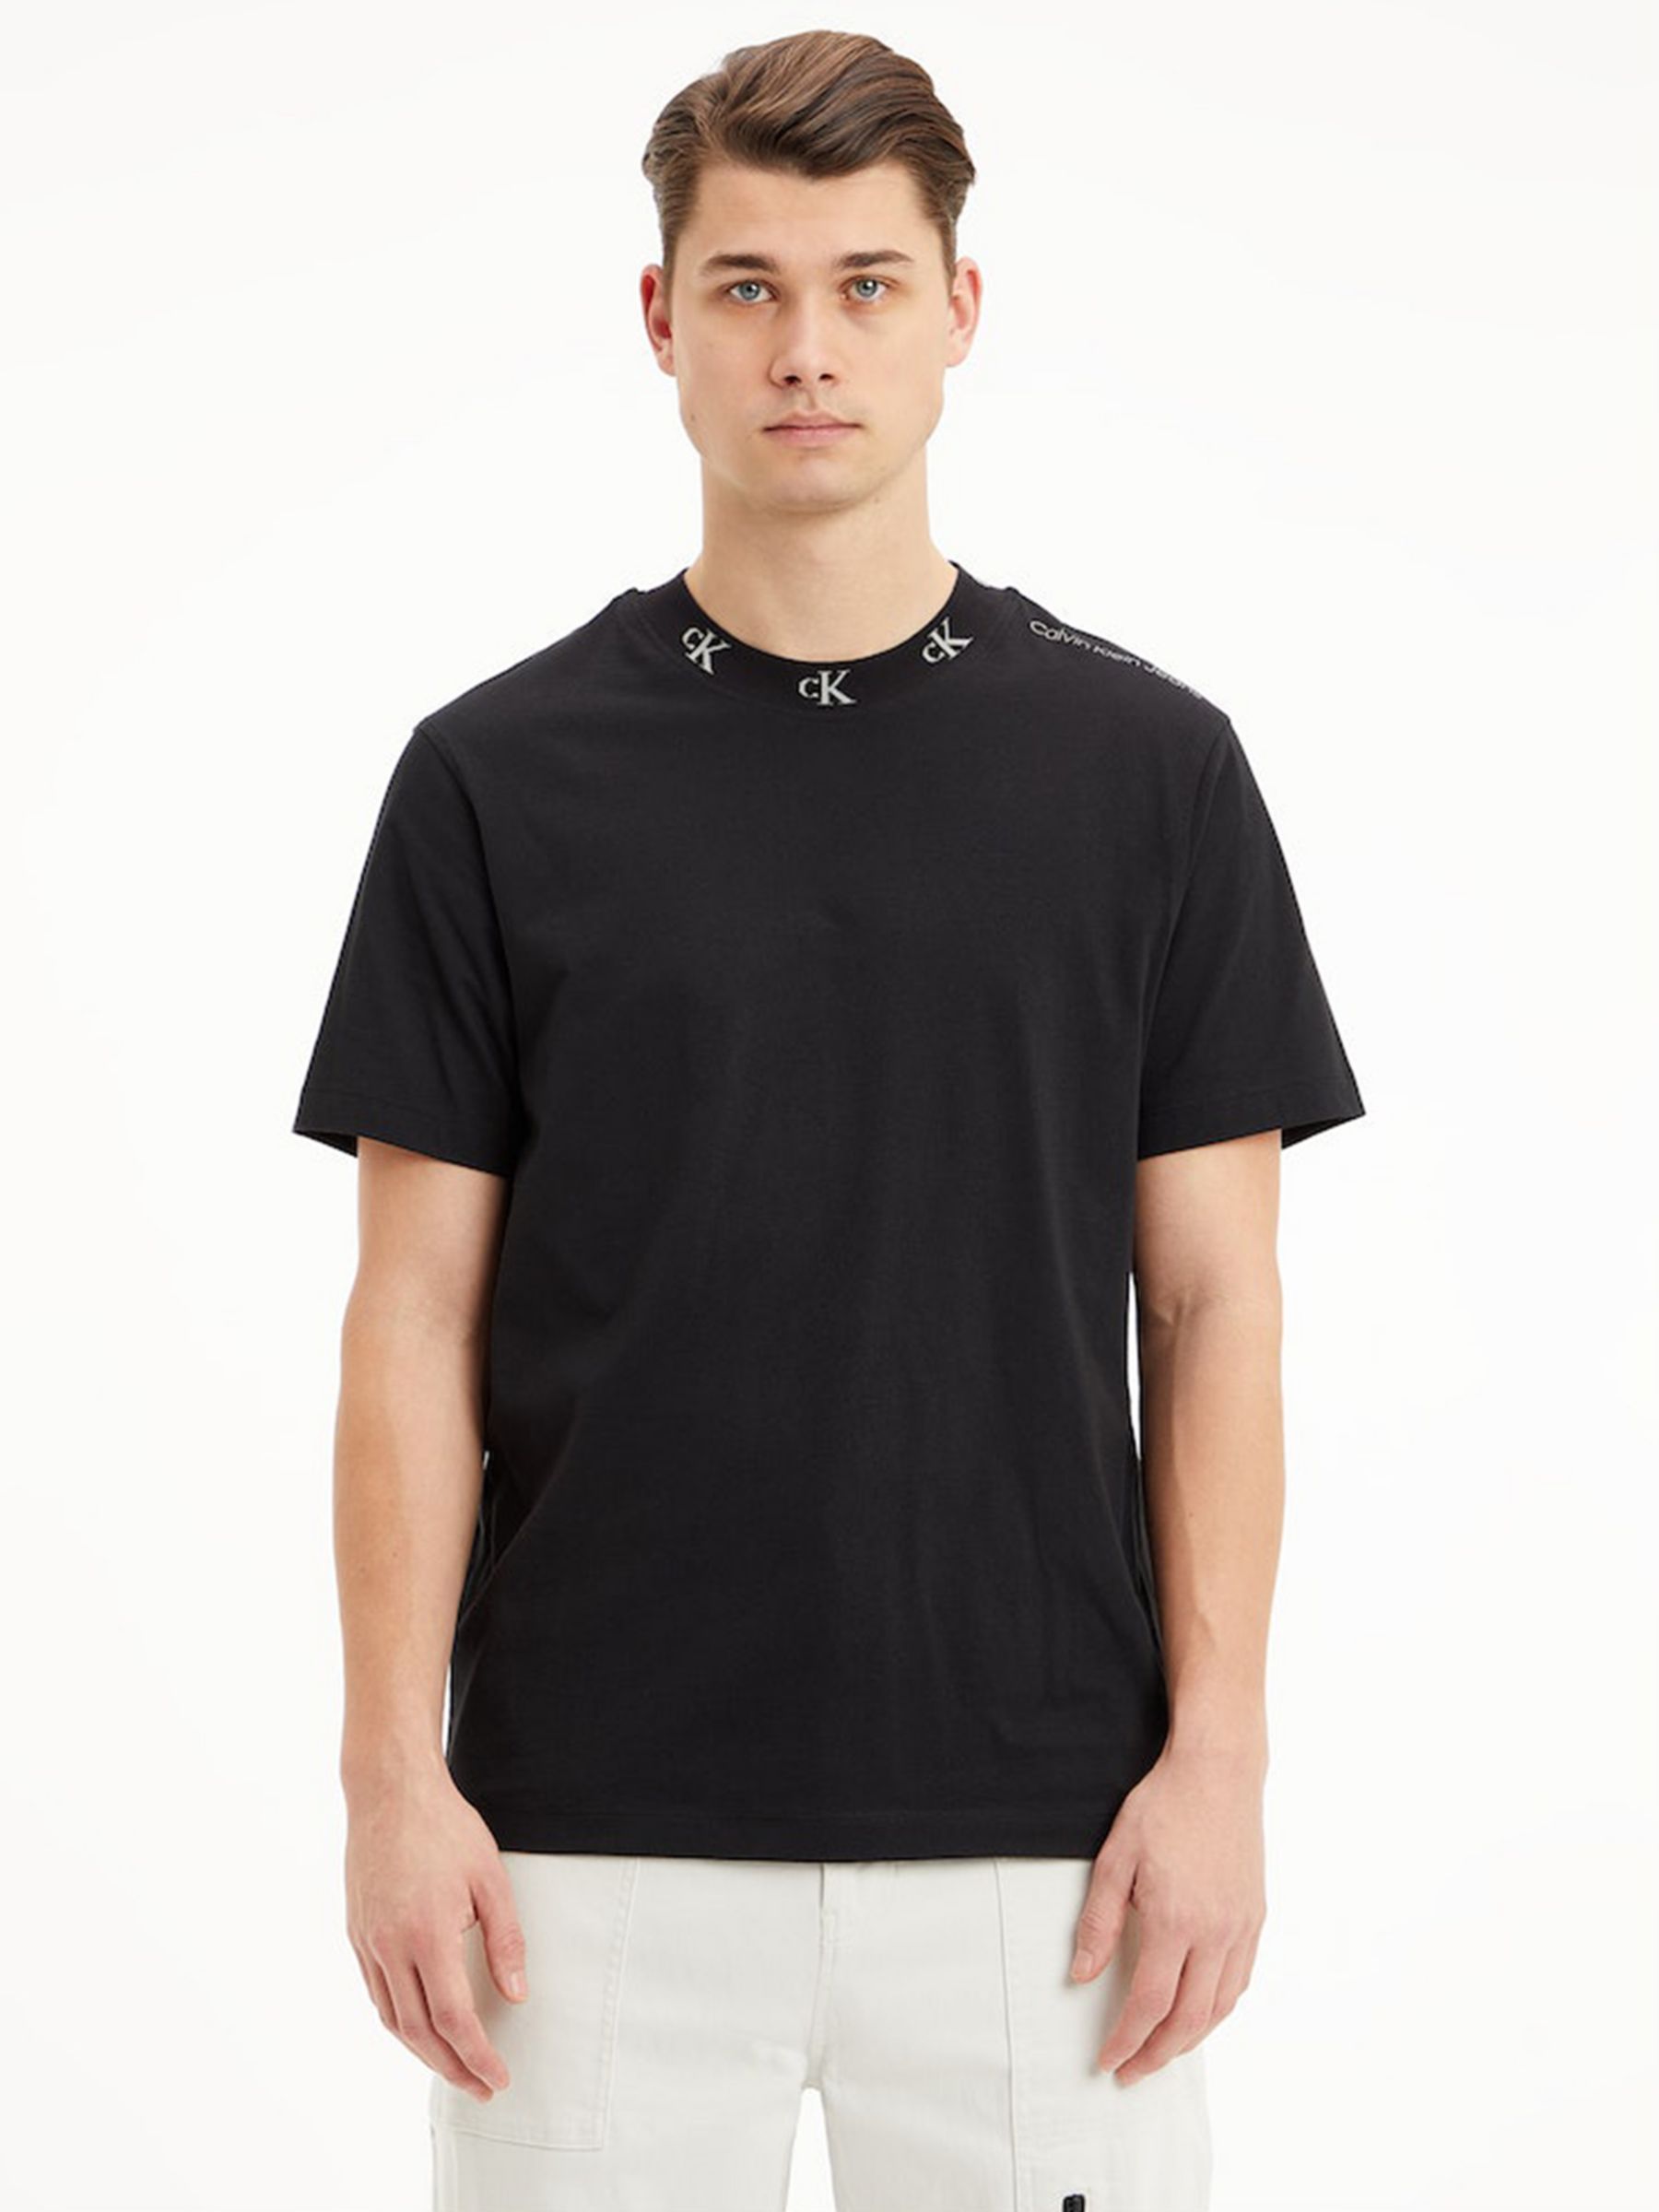 Calvin Klein Jeans Jacquard Logo T-Shirt, CK Black at John Lewis